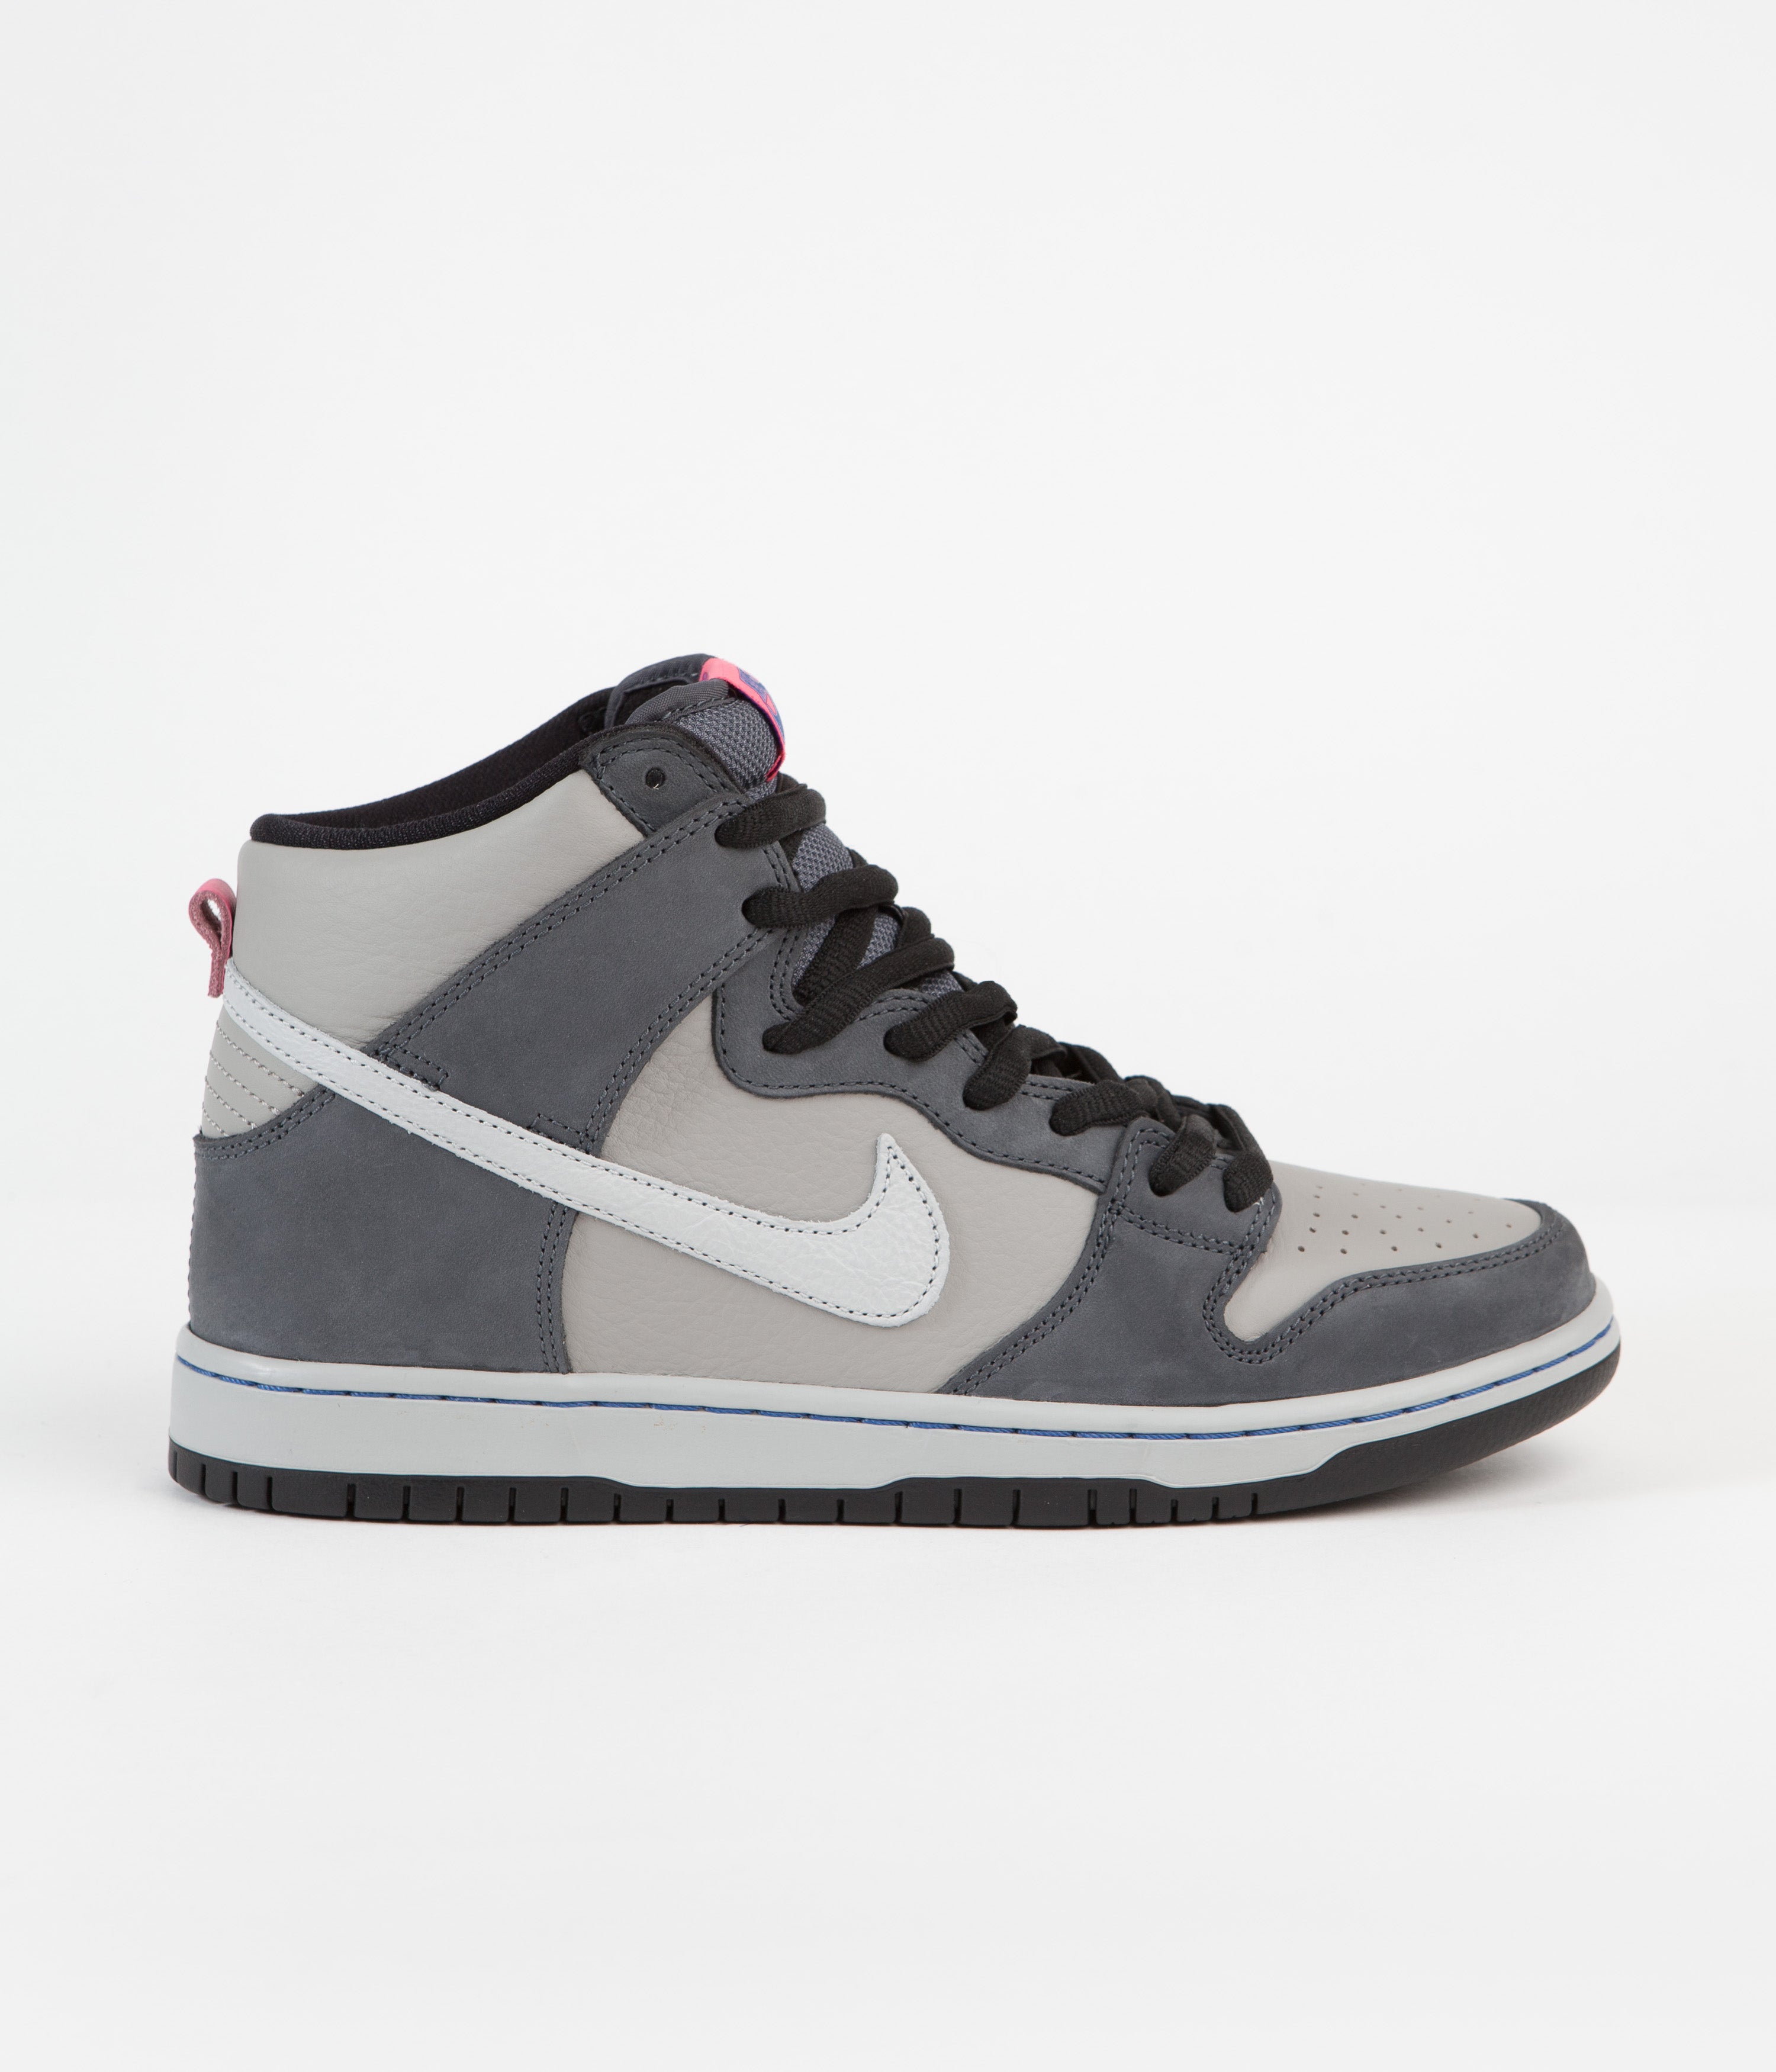 Nike SB Dunk High Pro 'ACG Superdome' Shoes - Flint Grey / Grey Fog ...